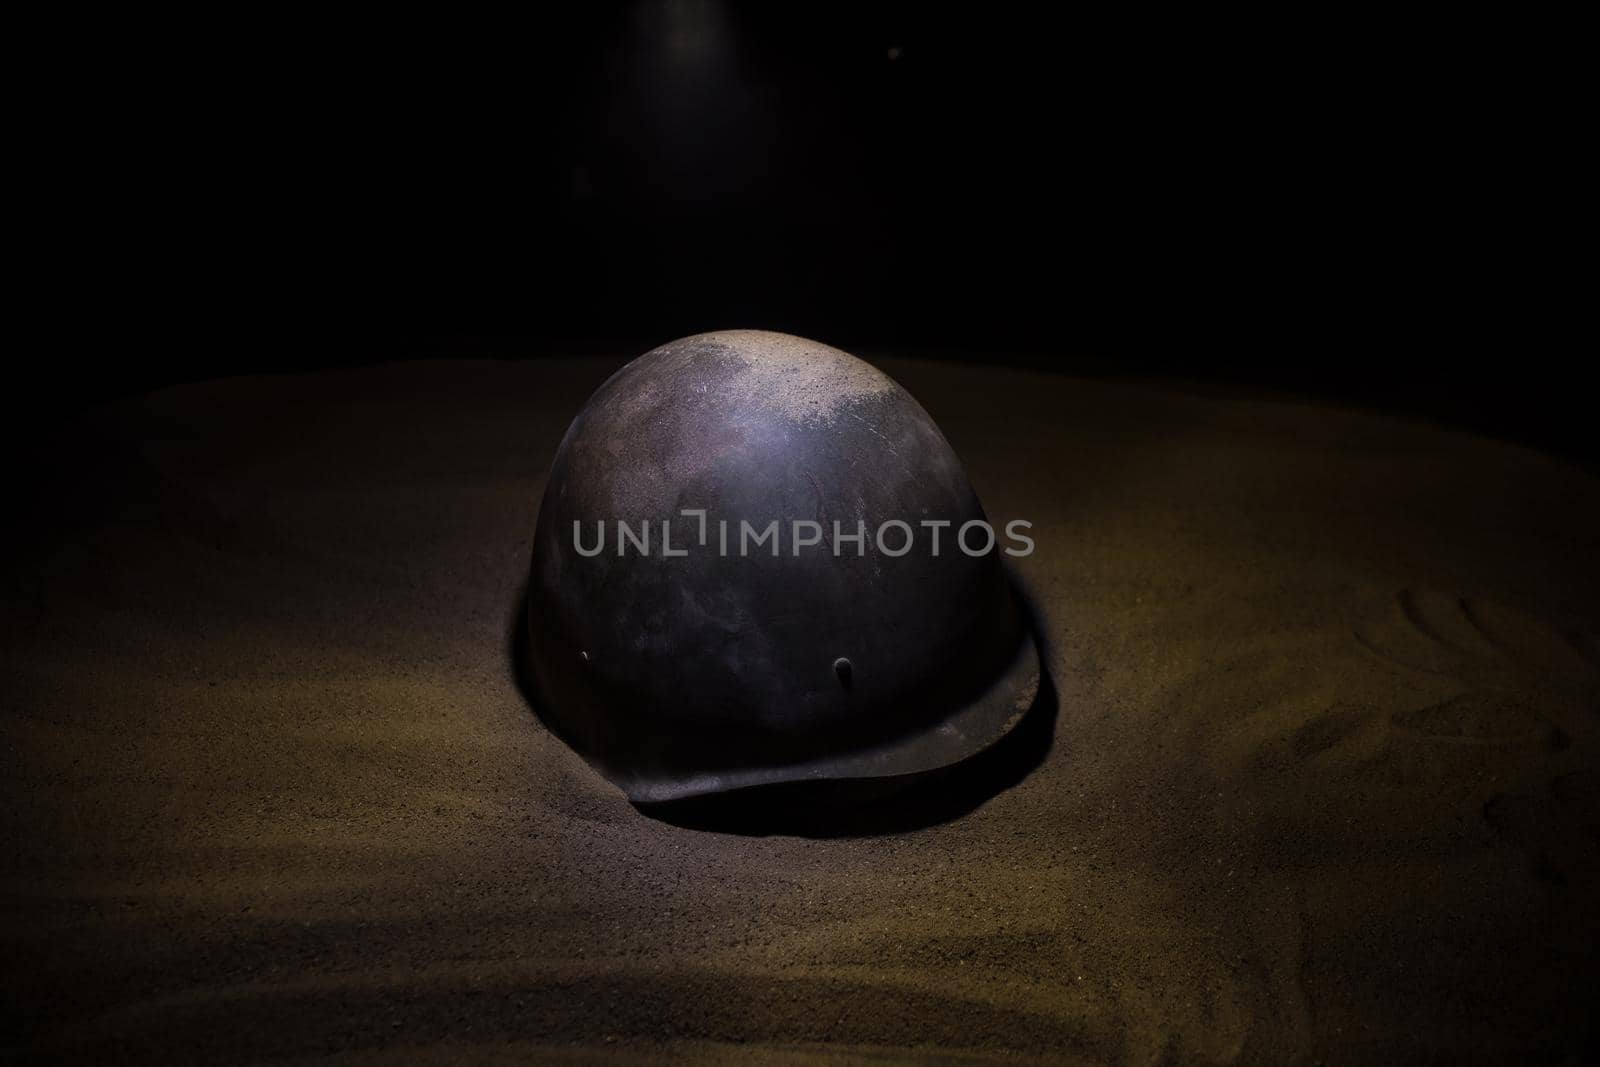 Soviet army Helmet Second World War in dark. Selective focus by Zeferli